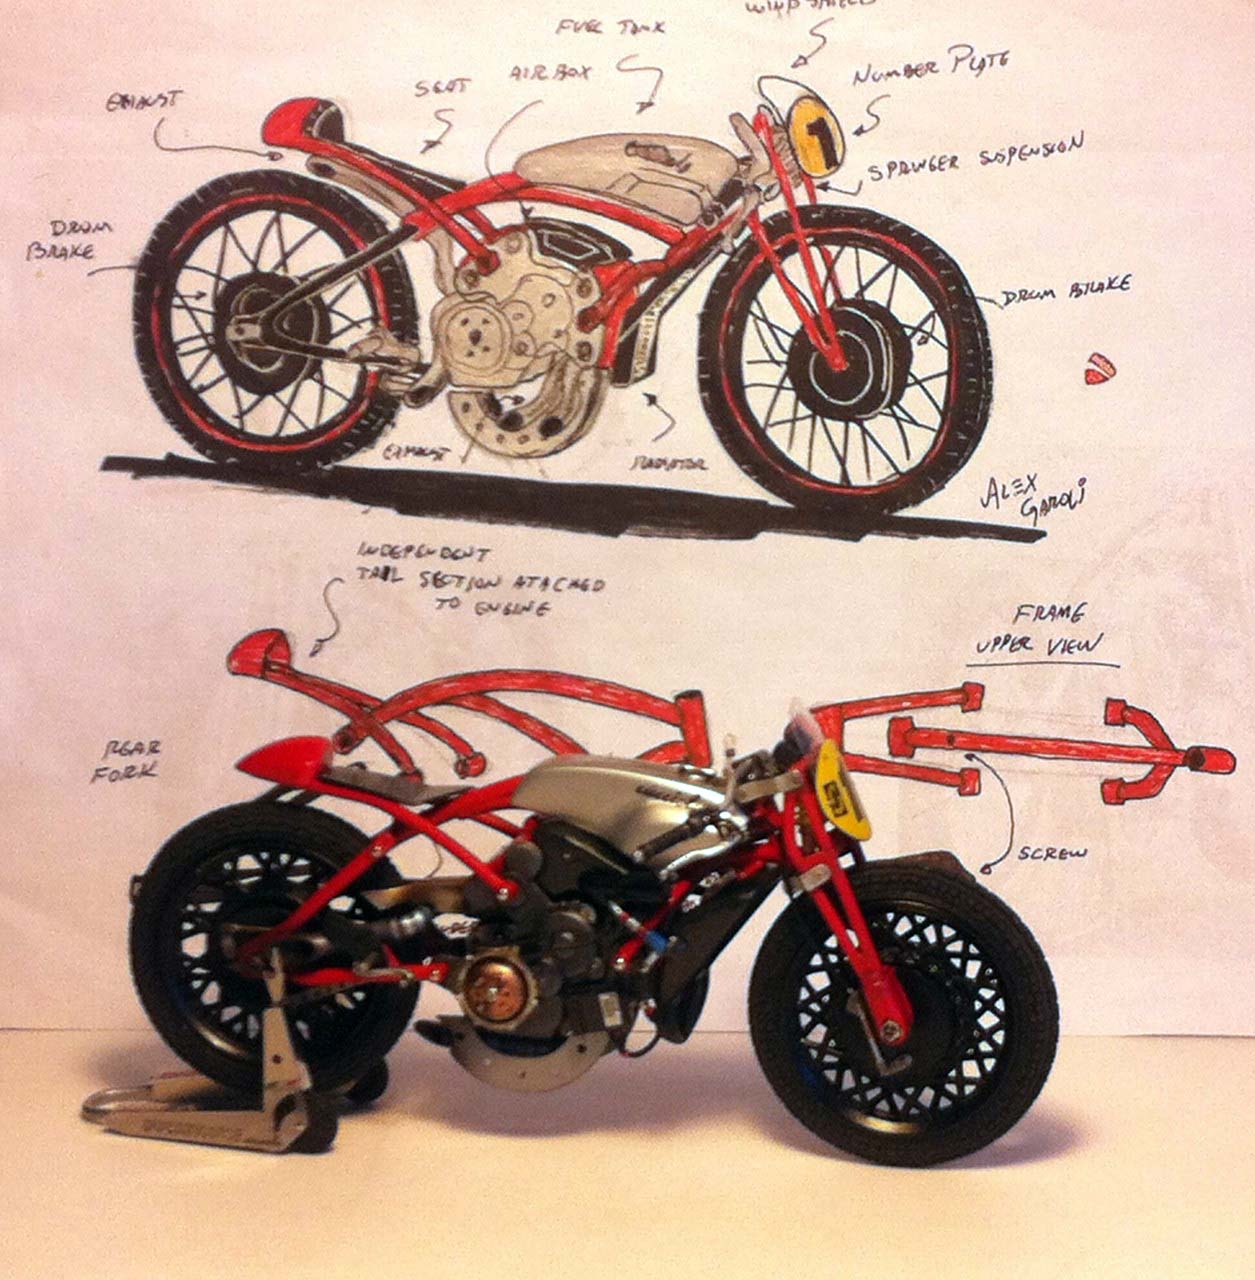 Ducati Desmosedici Cucciolo Concept by Alex Garoli